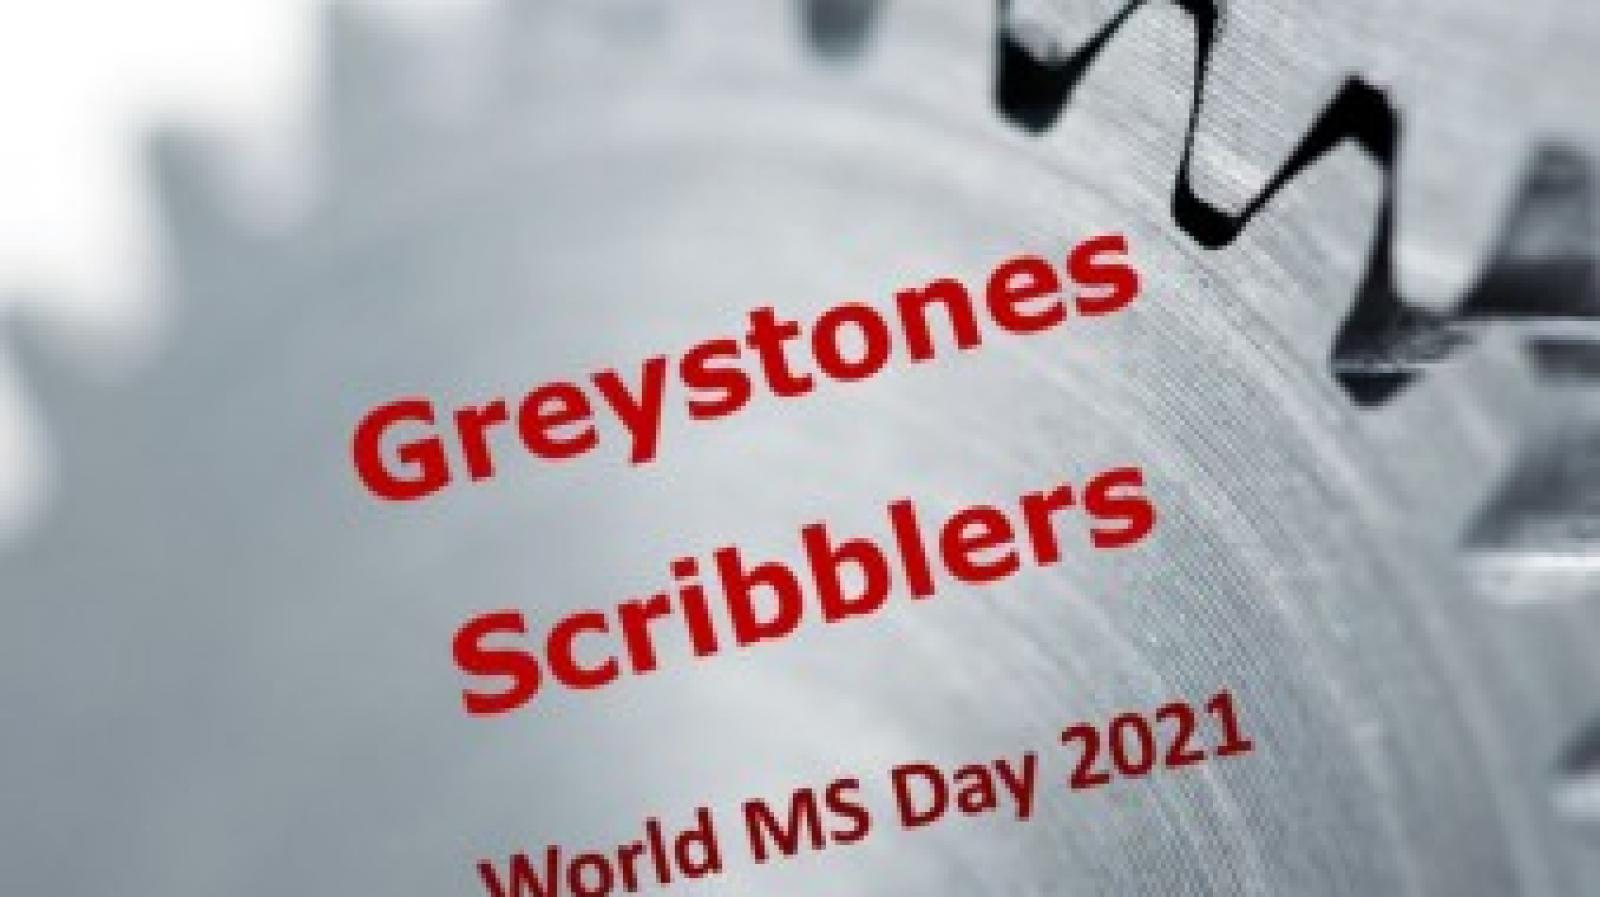 Greystones Scribblers ezine